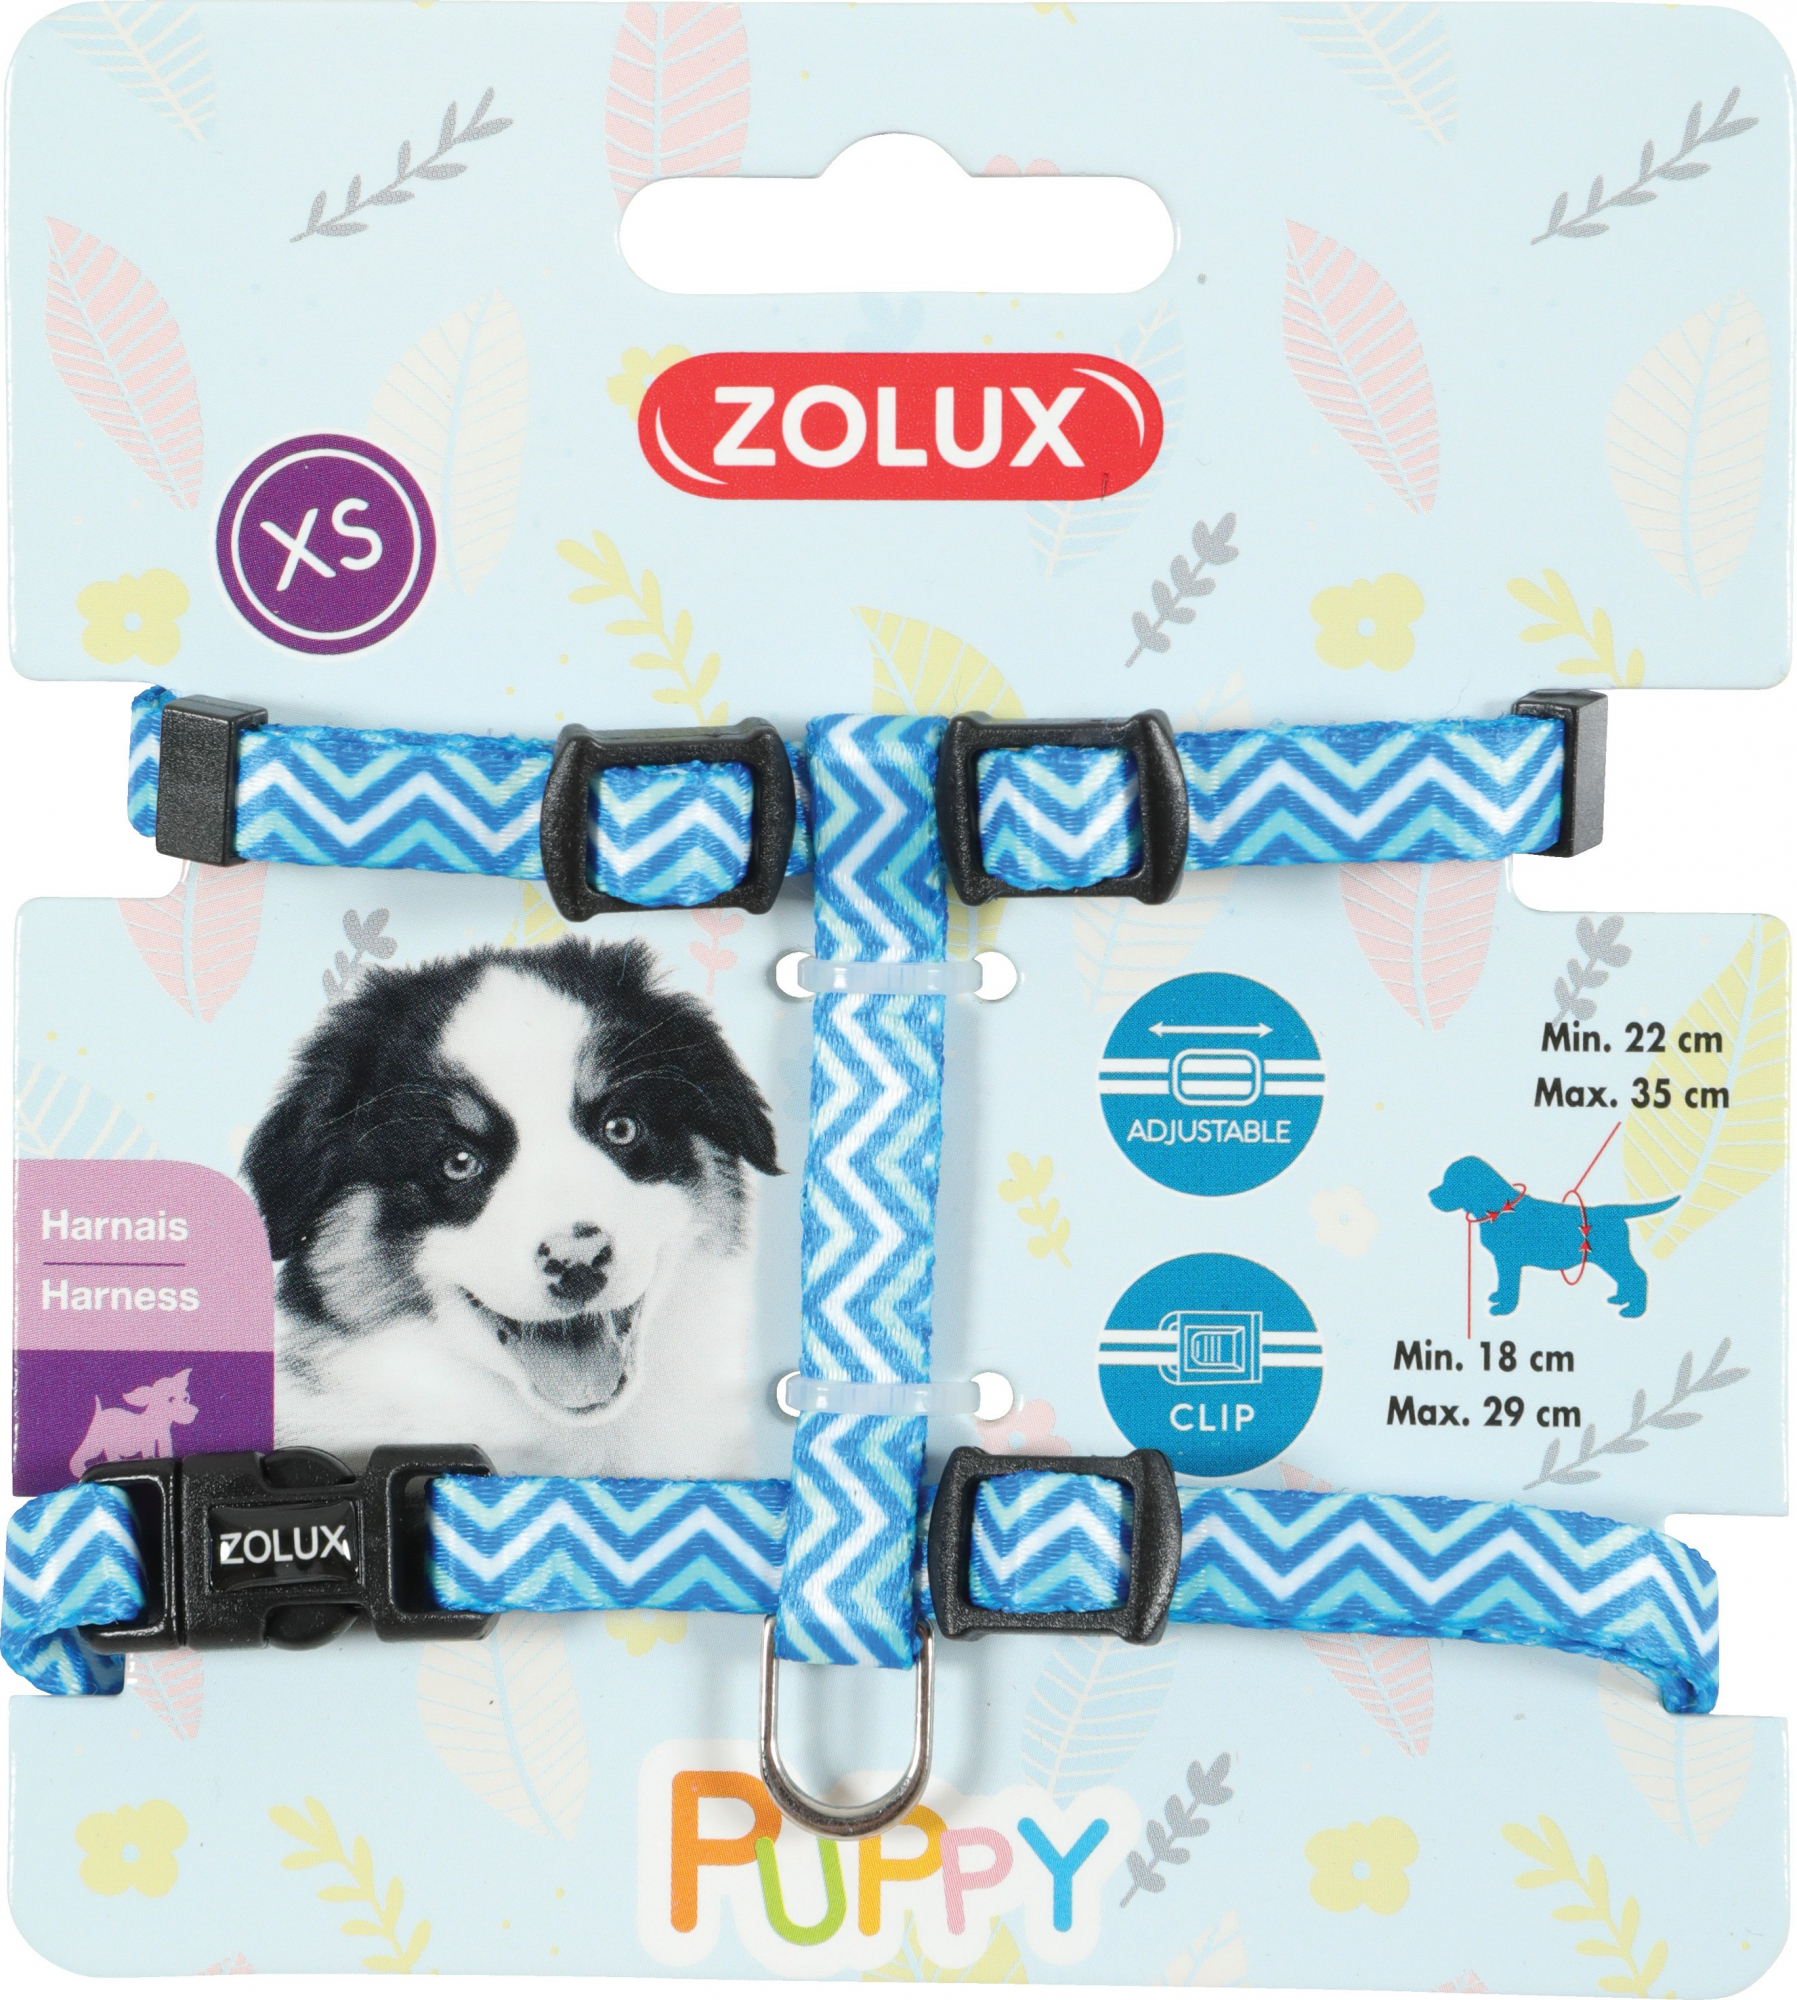 Puppy Pixie Verstellbares Nylongeschirr für Welpen- blau